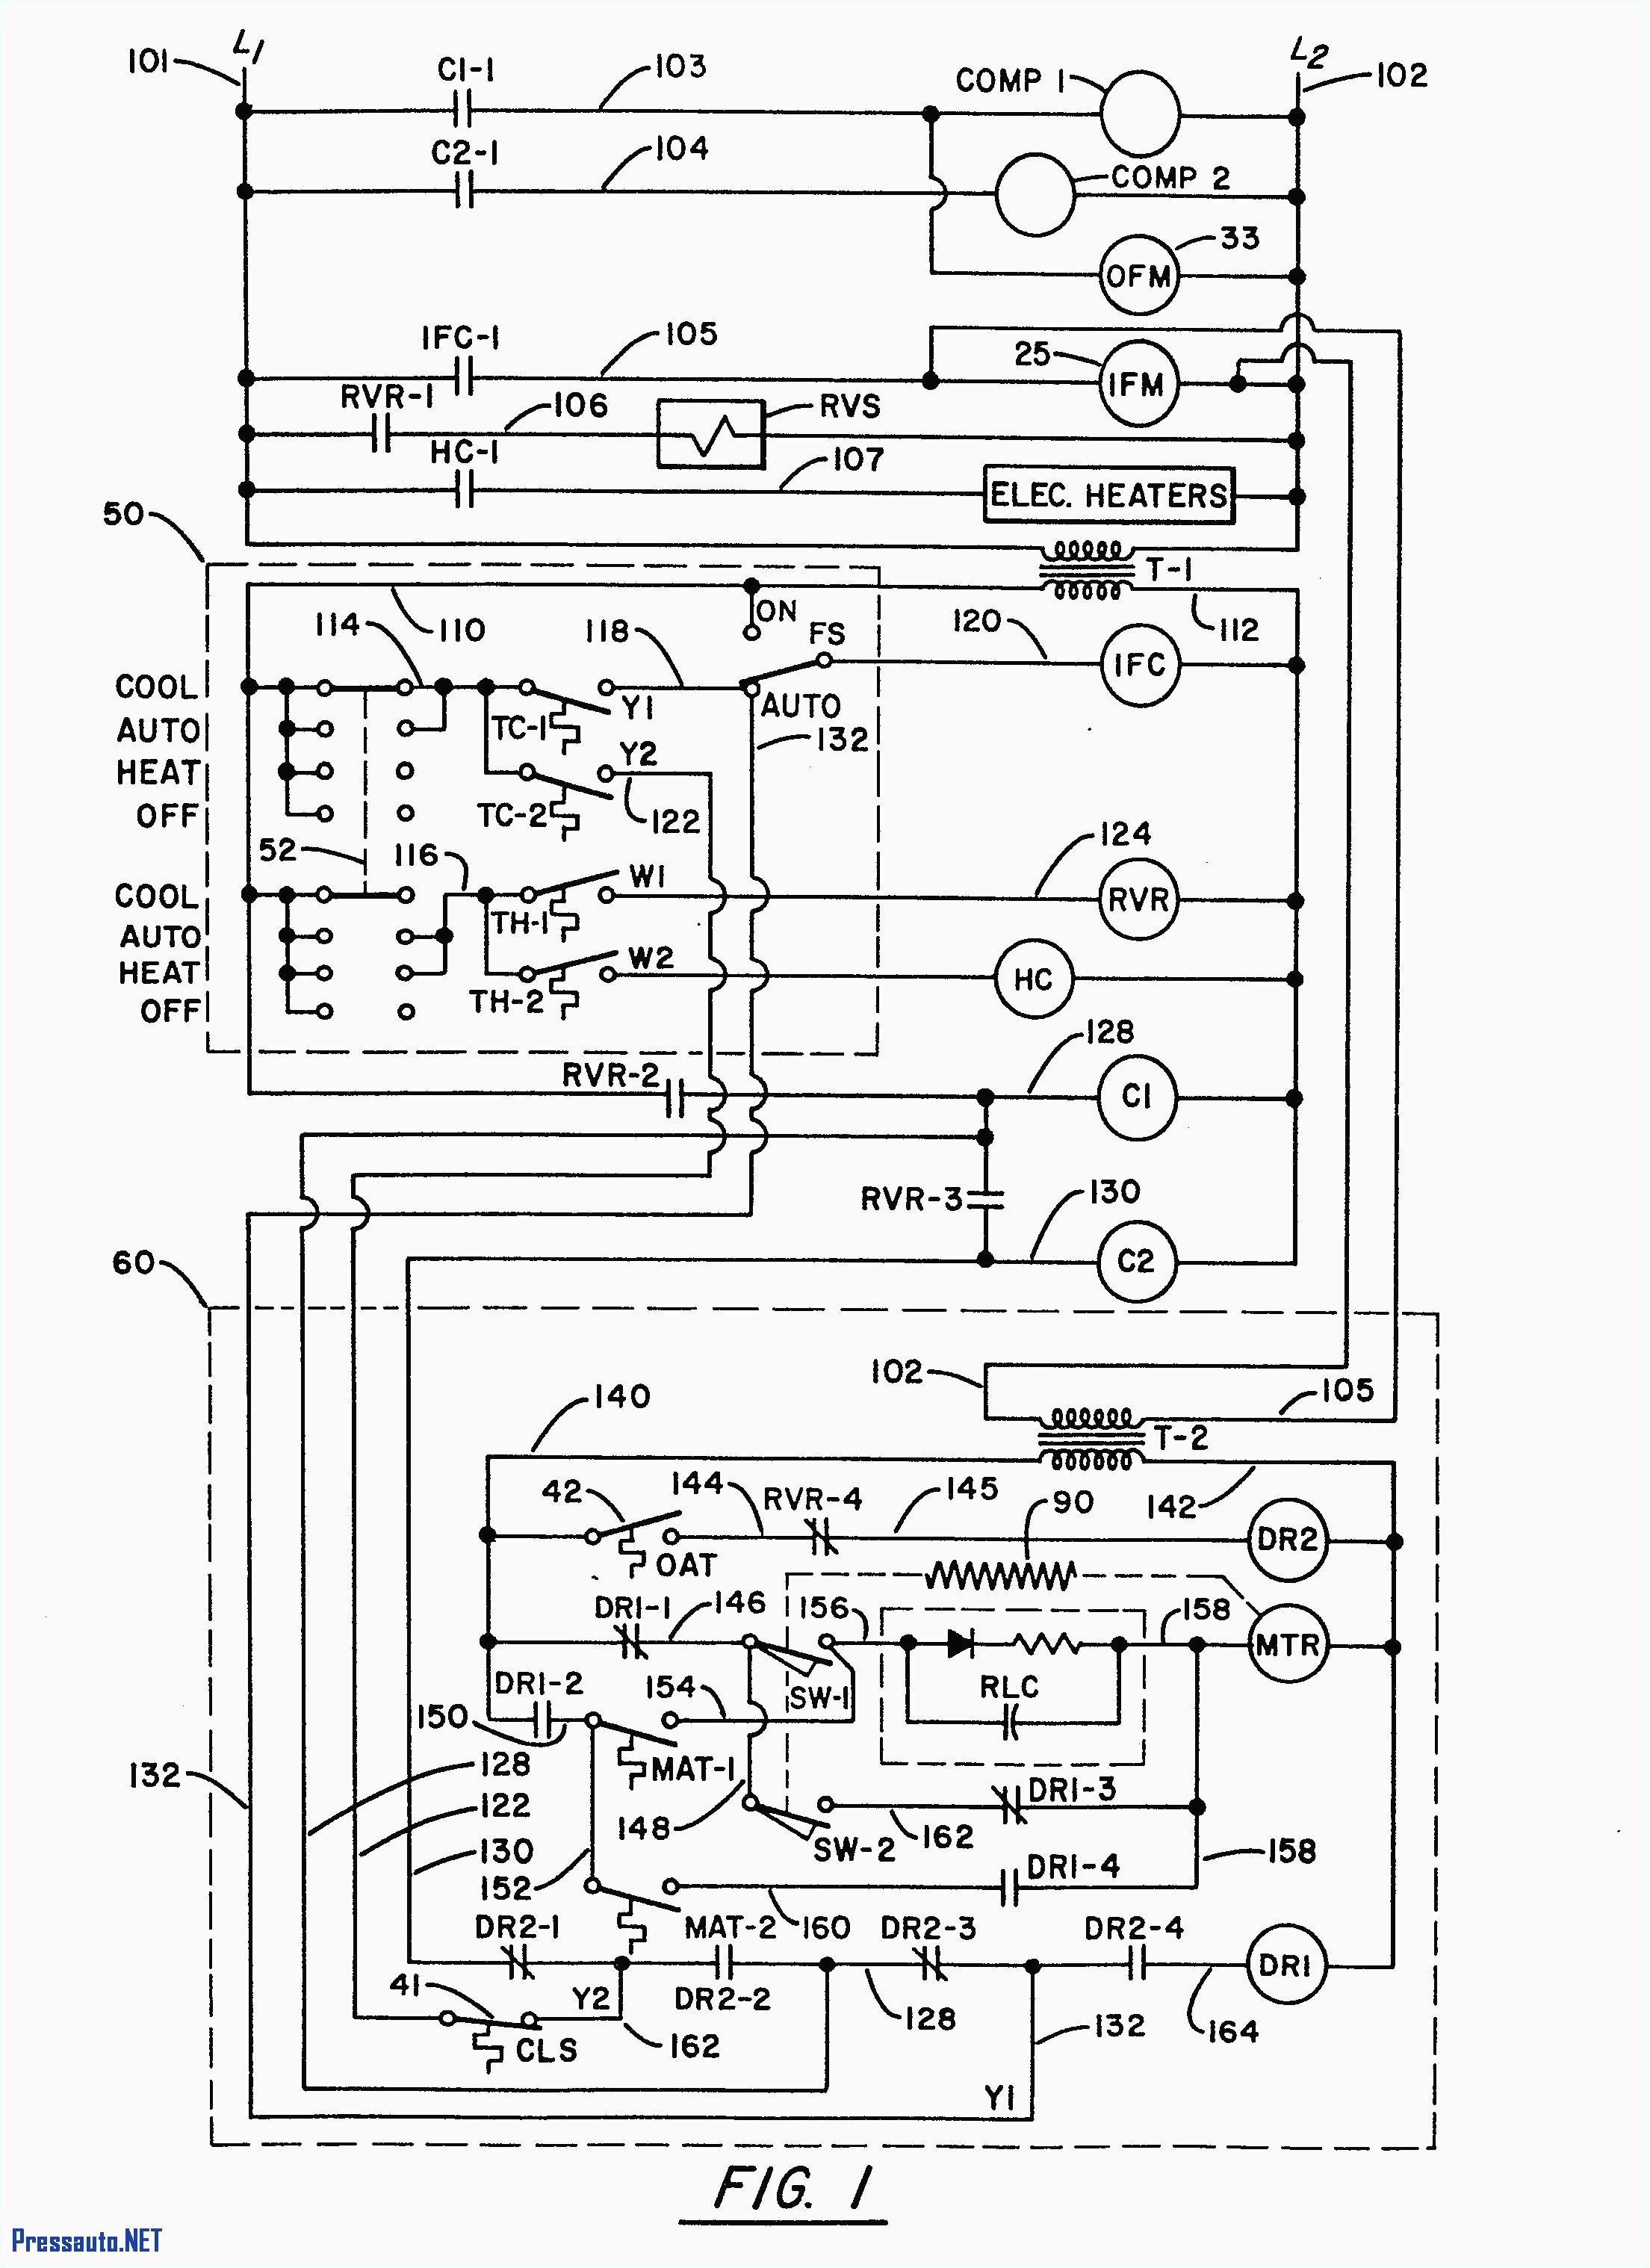 trane xr13 wiring diagram wiring diagram compilationtrane xr13 wiring diagram wiring diagram centre trane xr13 wiring